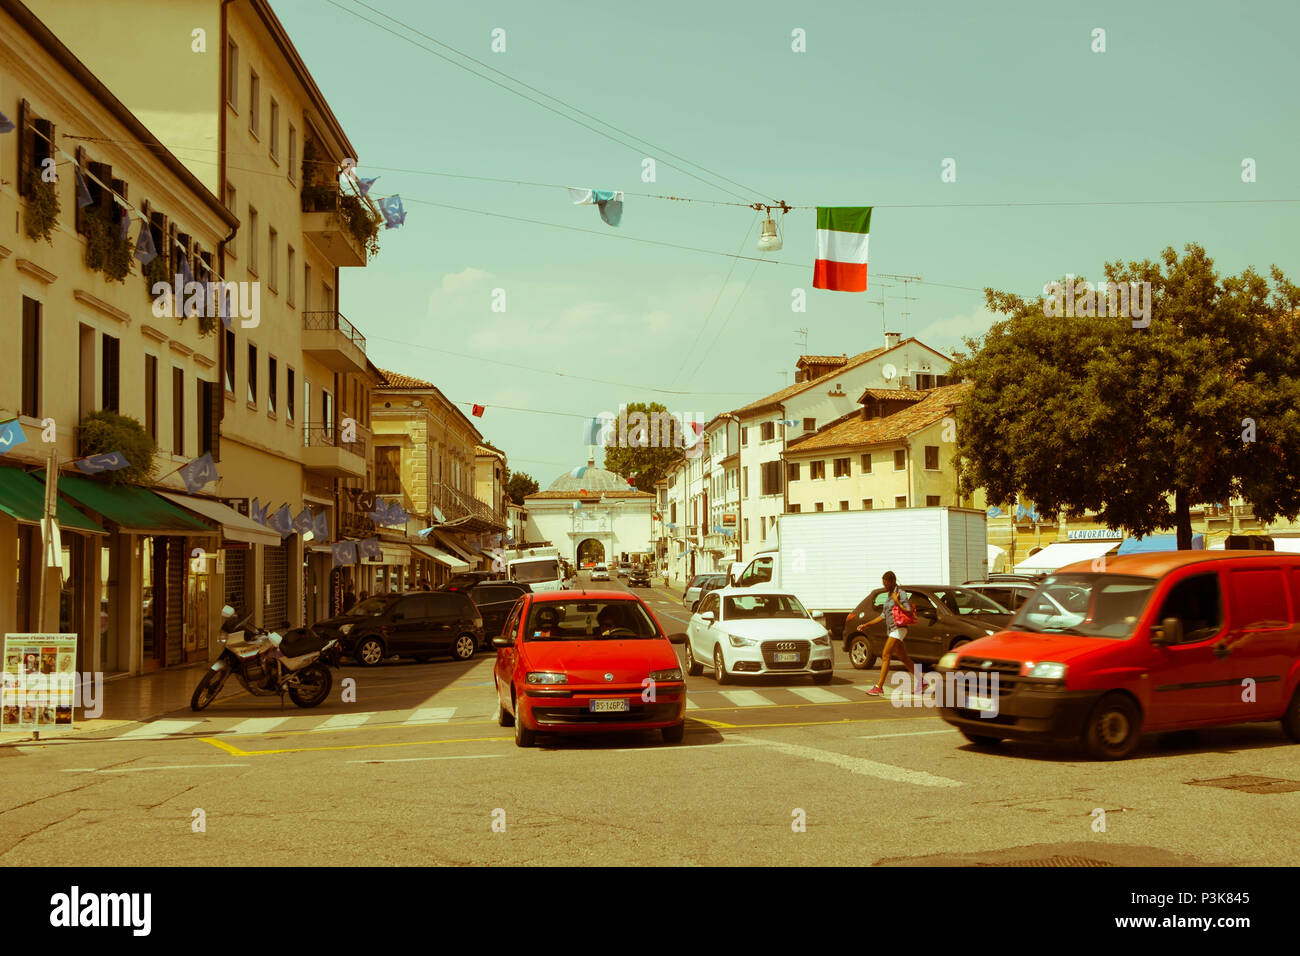 Ein Auto wartet auf ein anderes Auto an einer Kreuzung zu übergeben. Ein Fußgänger auf dem Zebrastreifen. Das ist Alltag in der Stadt Treviso. Stockfoto